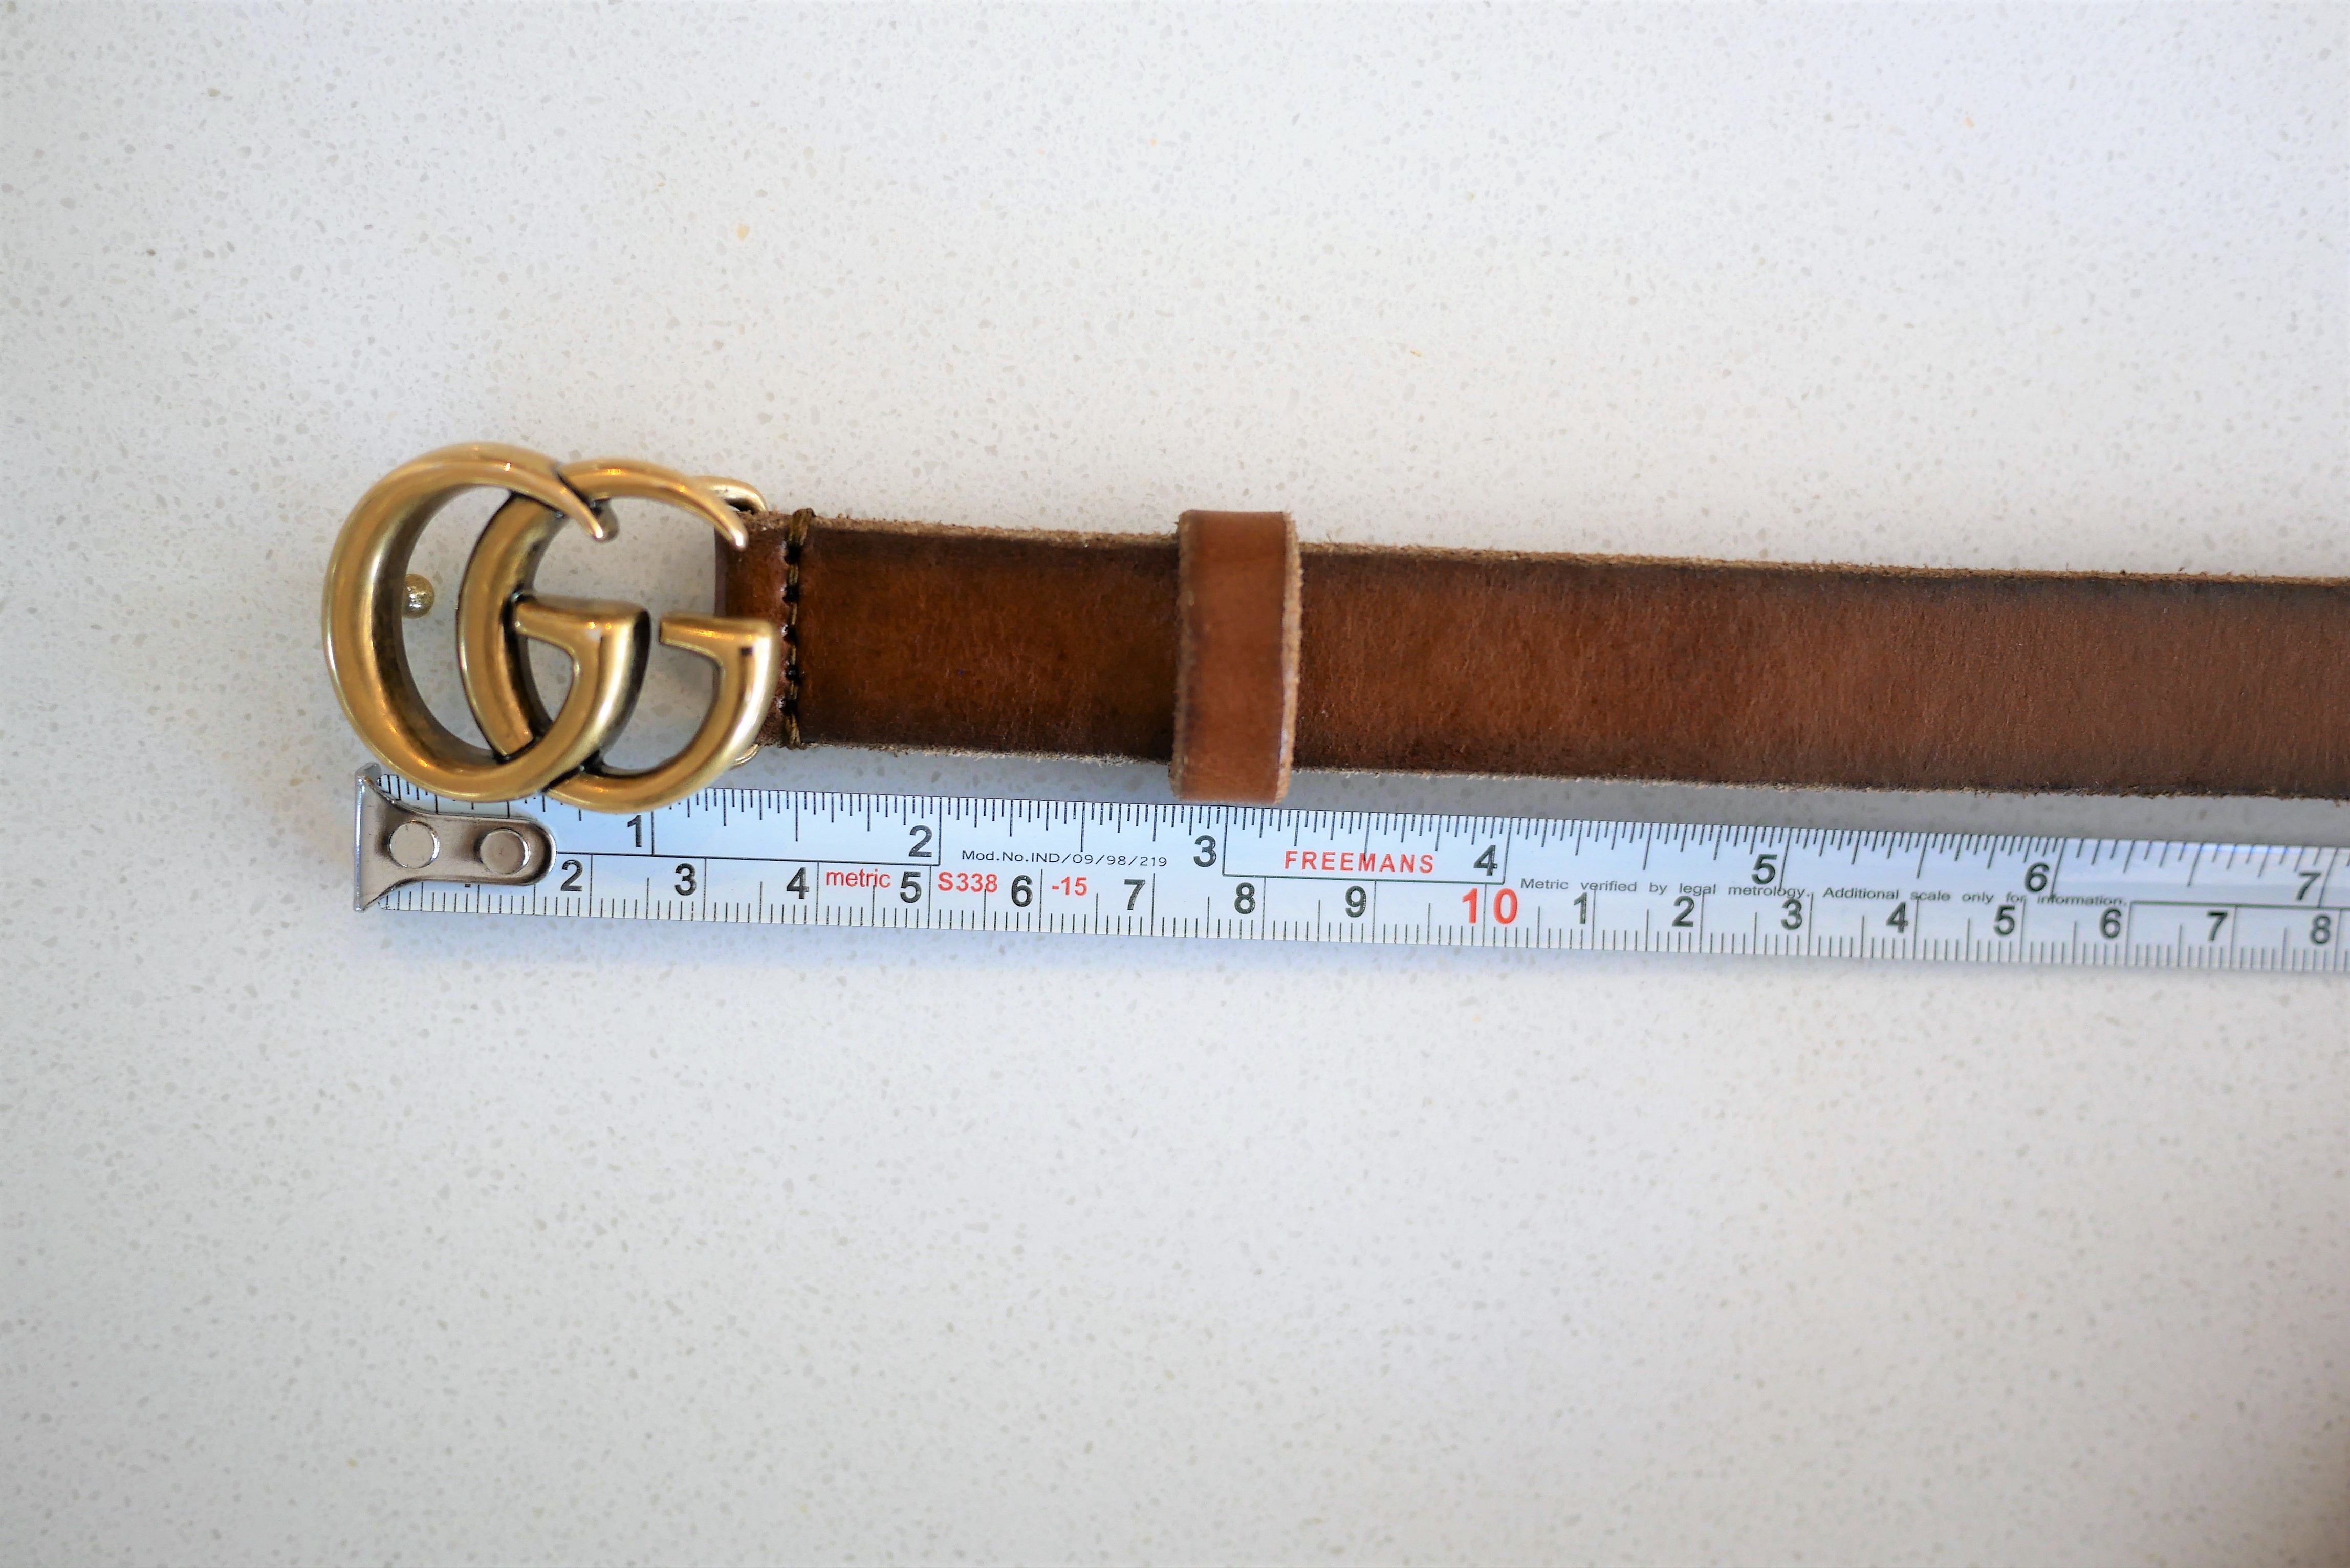 gucci belt dimensions